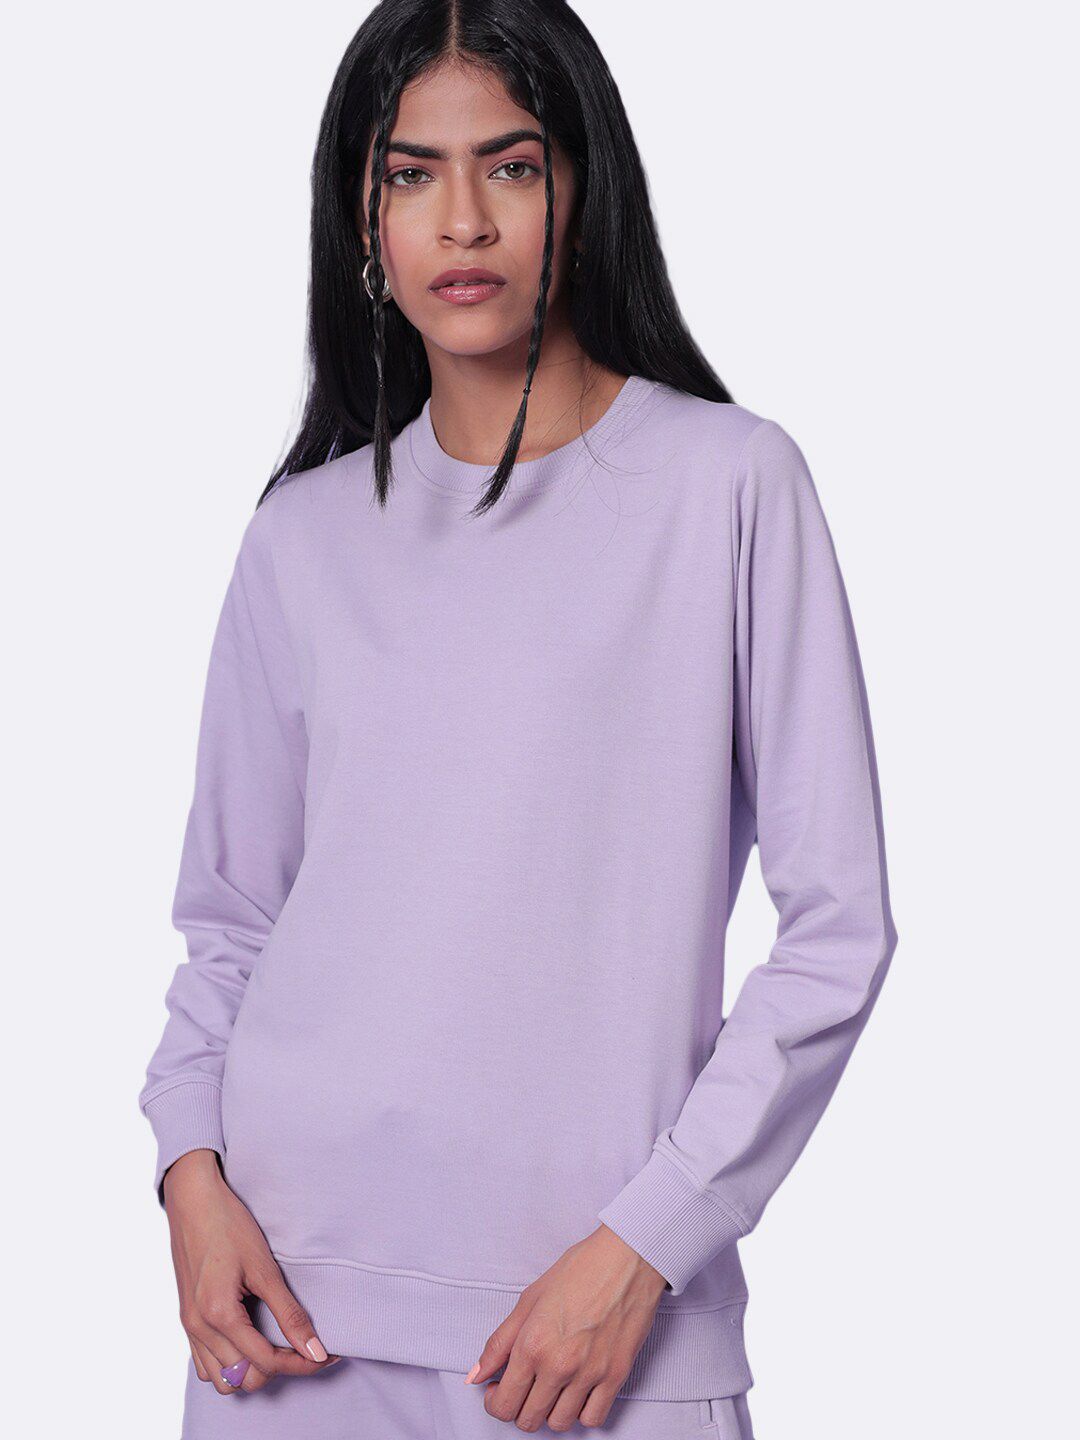 Bewakoof Women Purple Fleece Sweatshirt Price in India